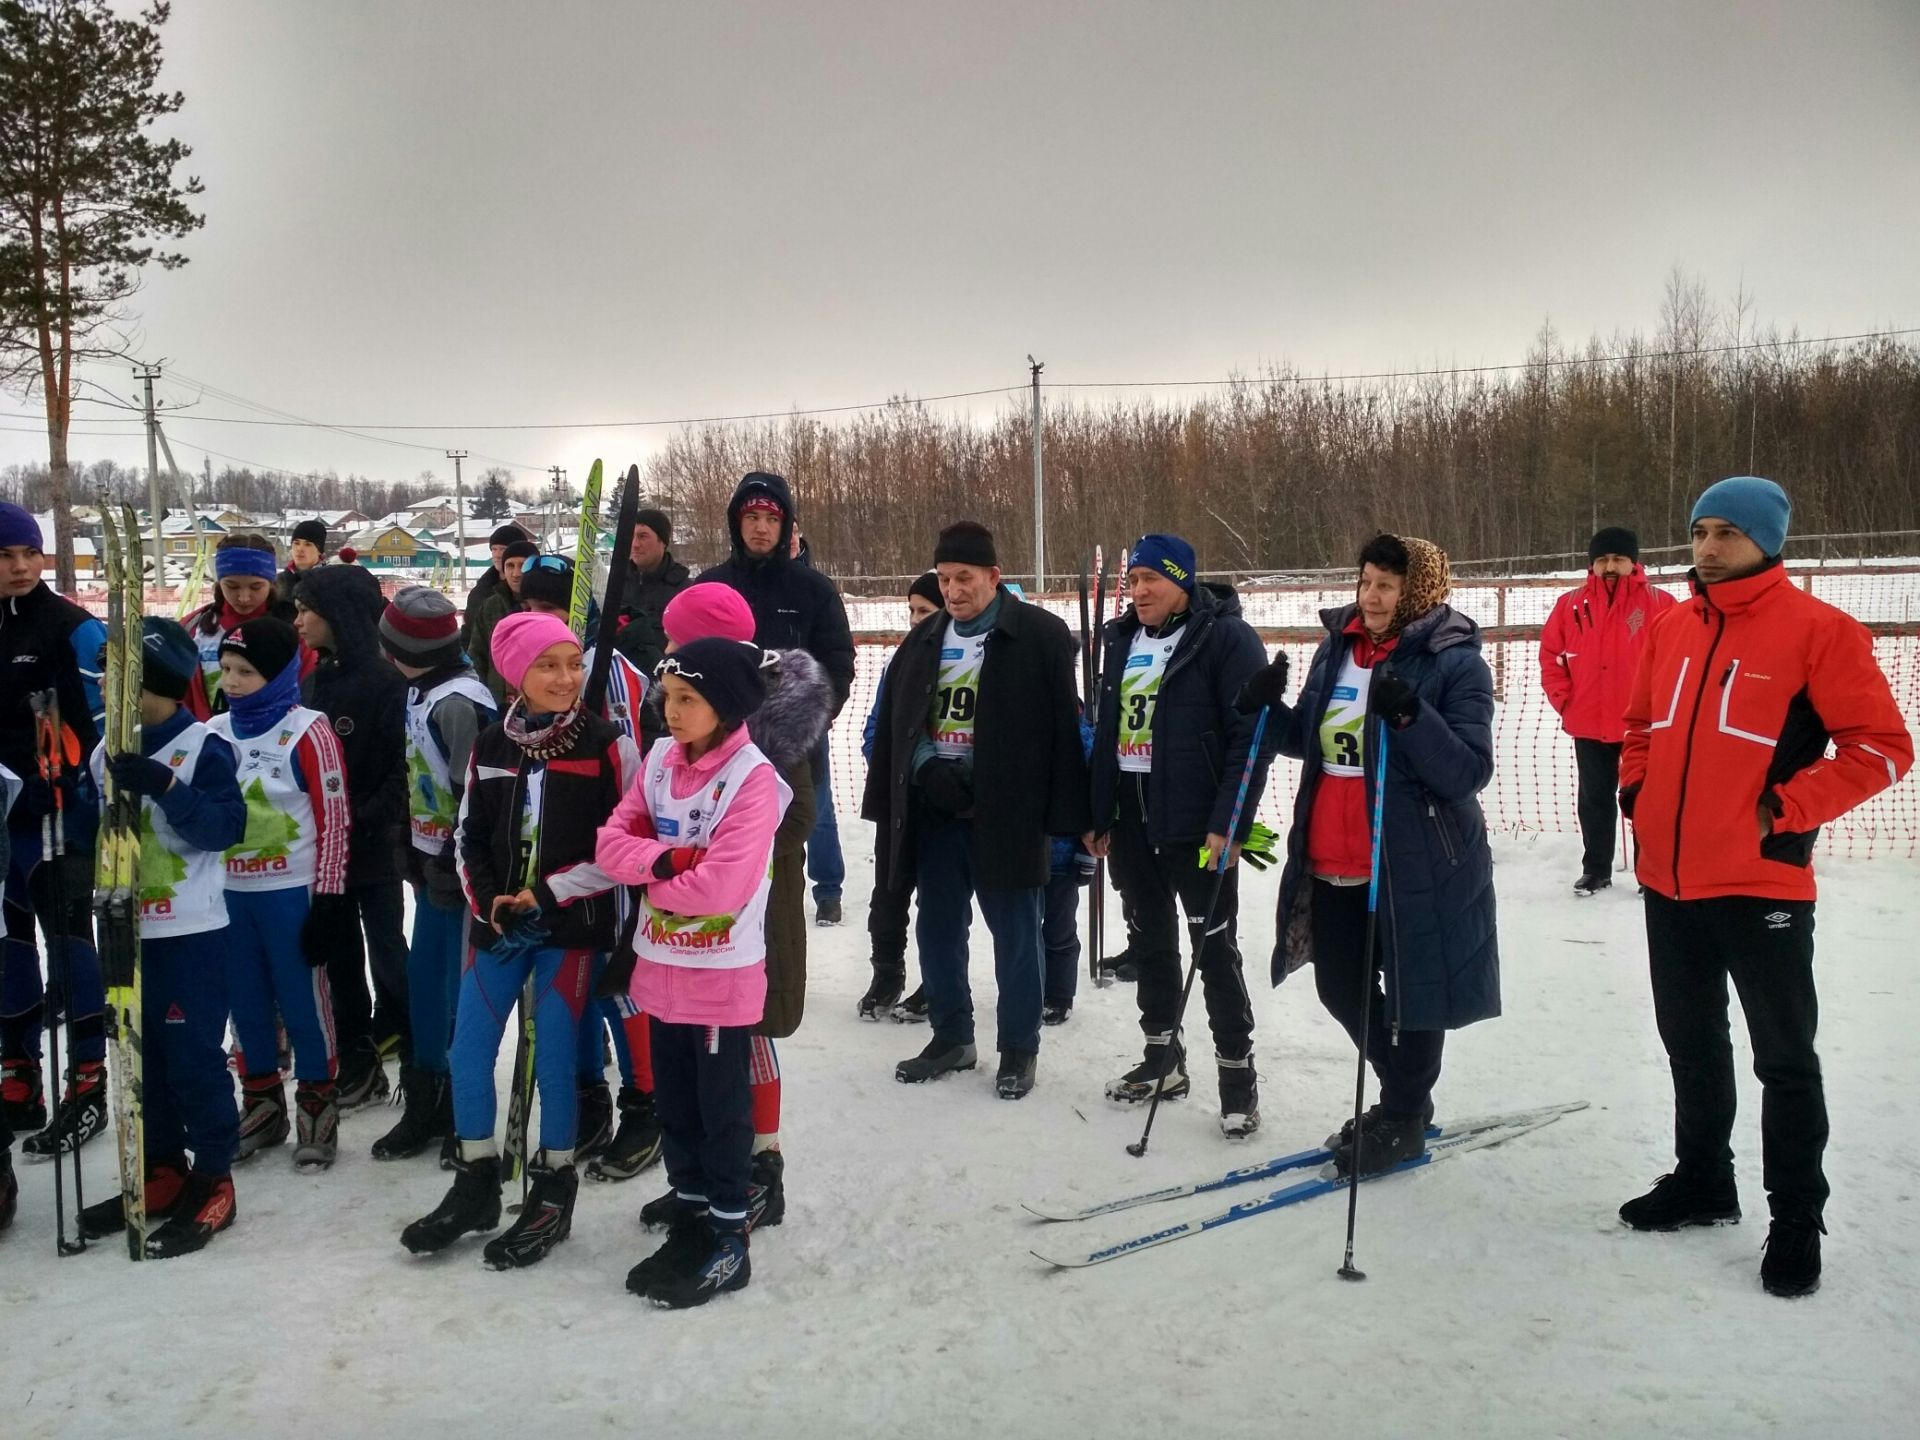 В Кукморском районе состоялись лыжные гонки на призы валяльно-войлочного комбината